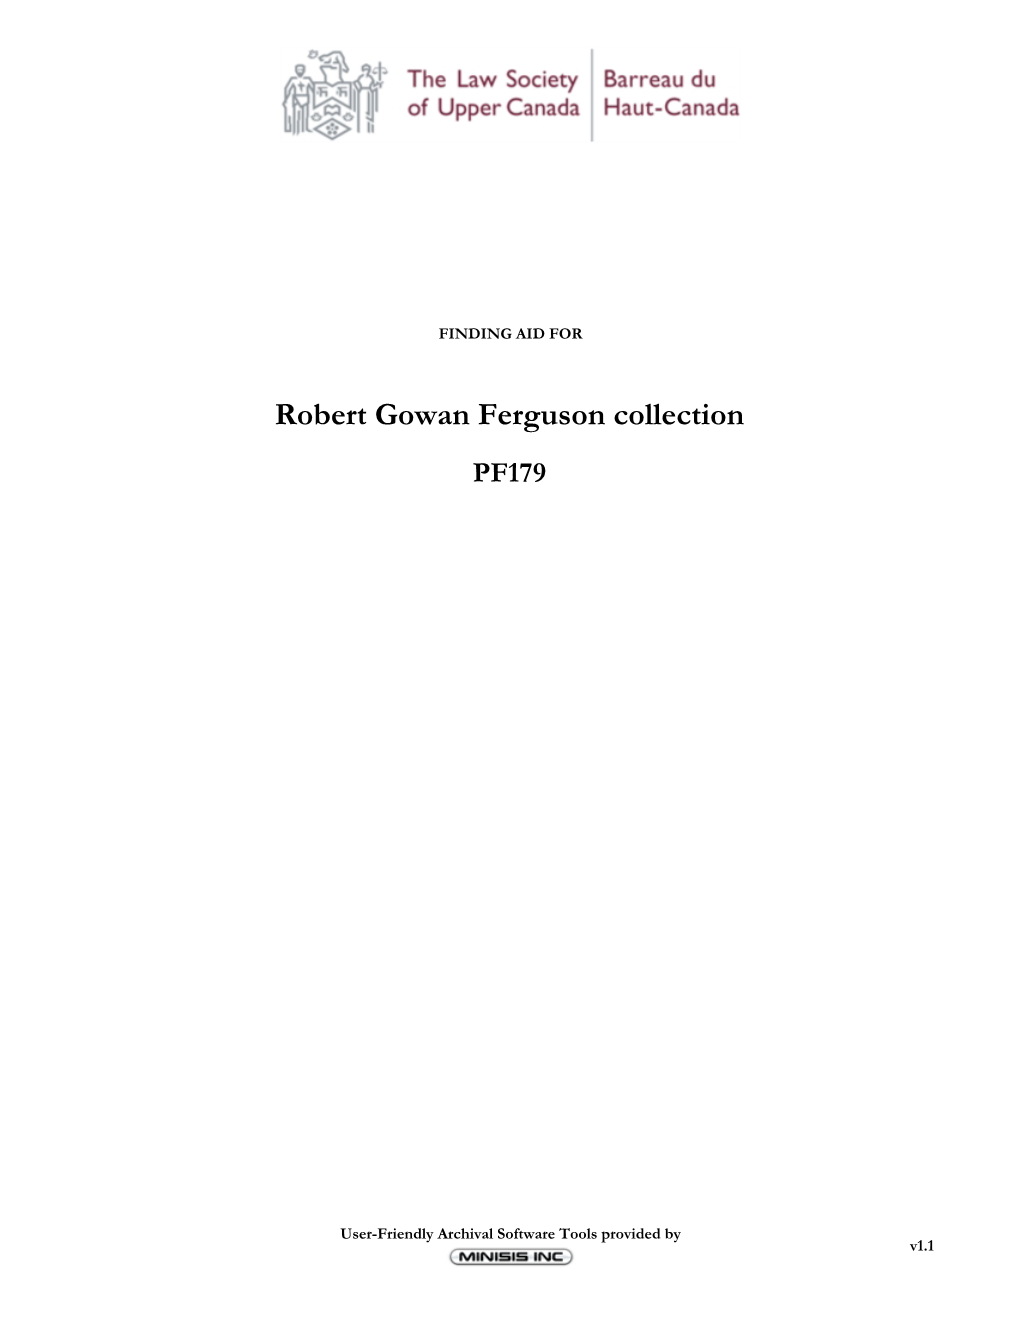 Robert Gowan Ferguson Collection PF179